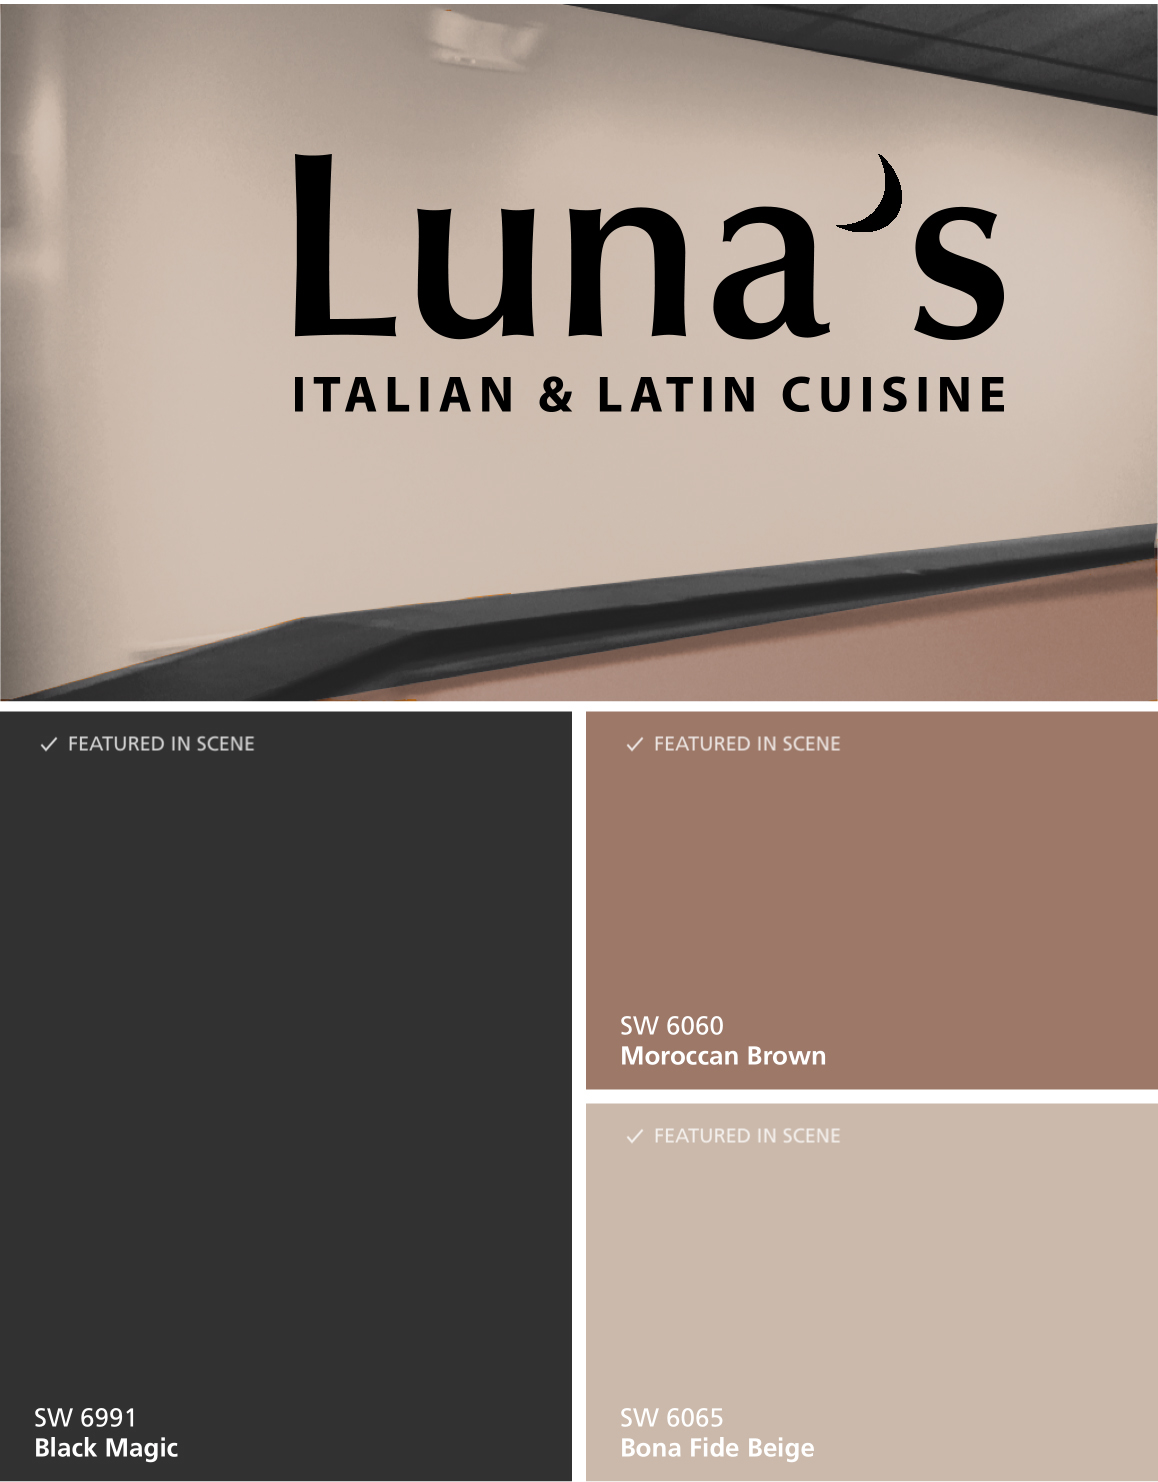 Restaurant Branding branding  graphic design 